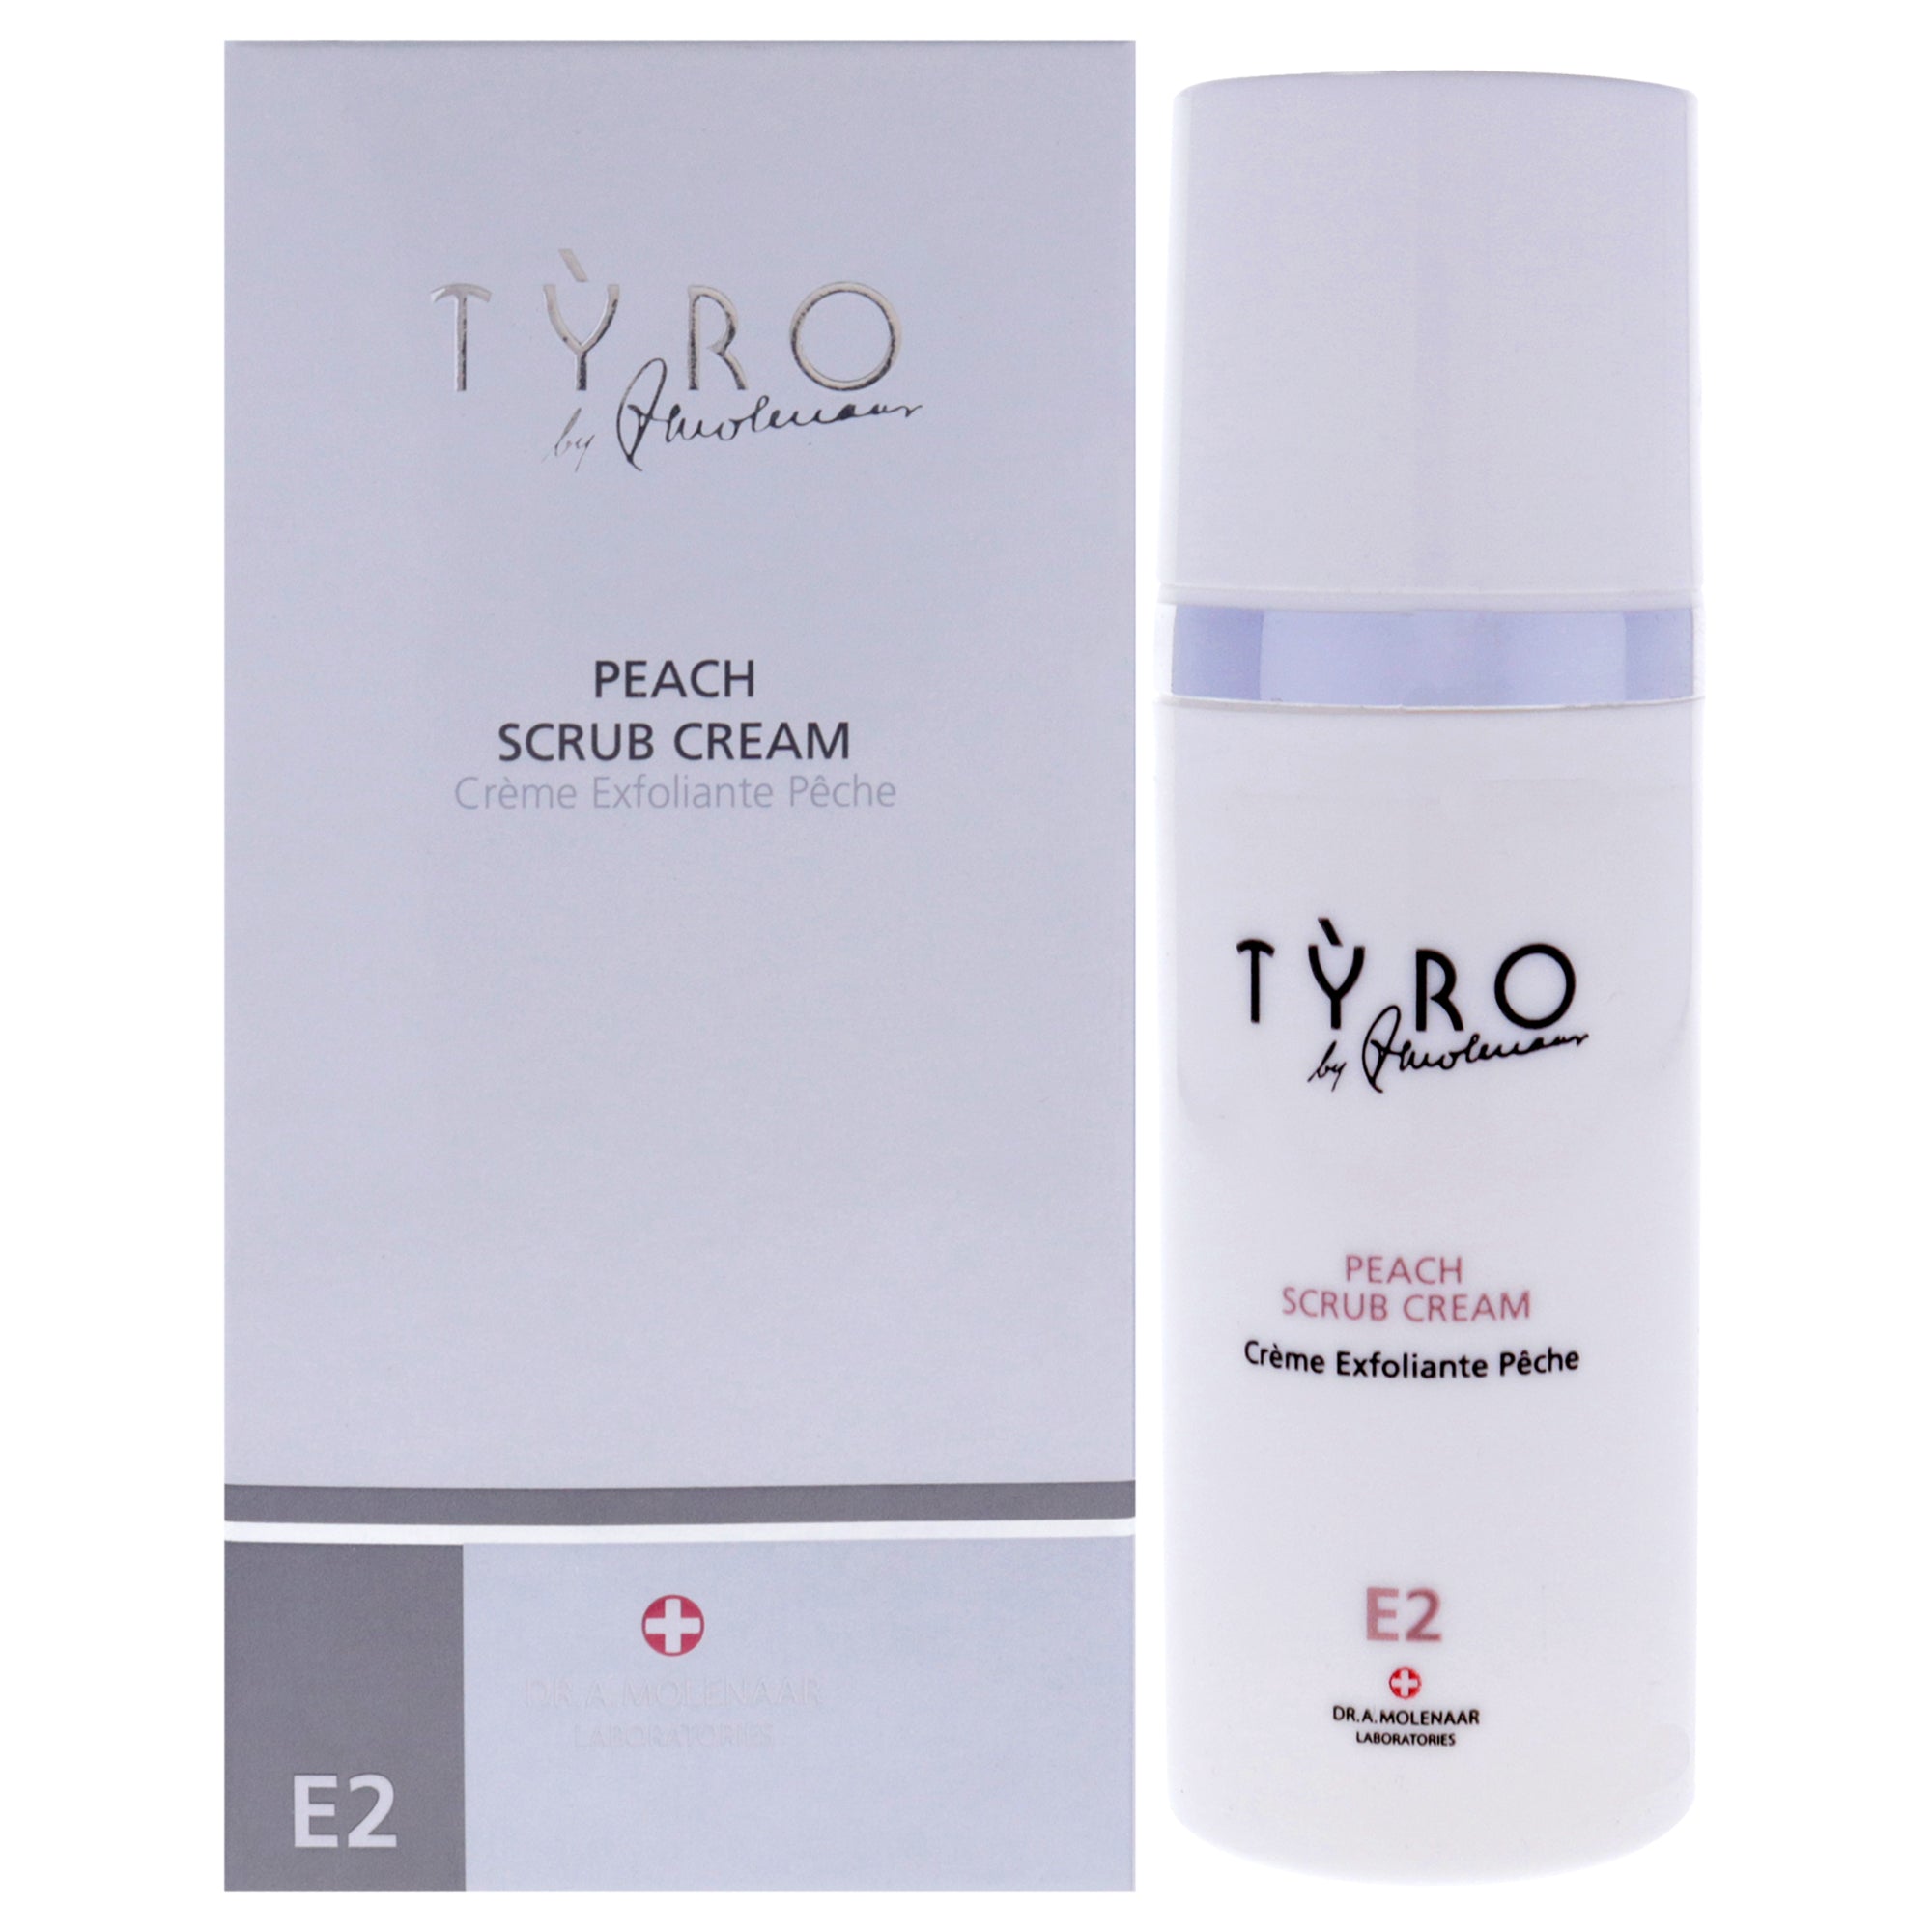 Peach Scrub Cream by Tyro for Unisex - 1.69 oz Cream